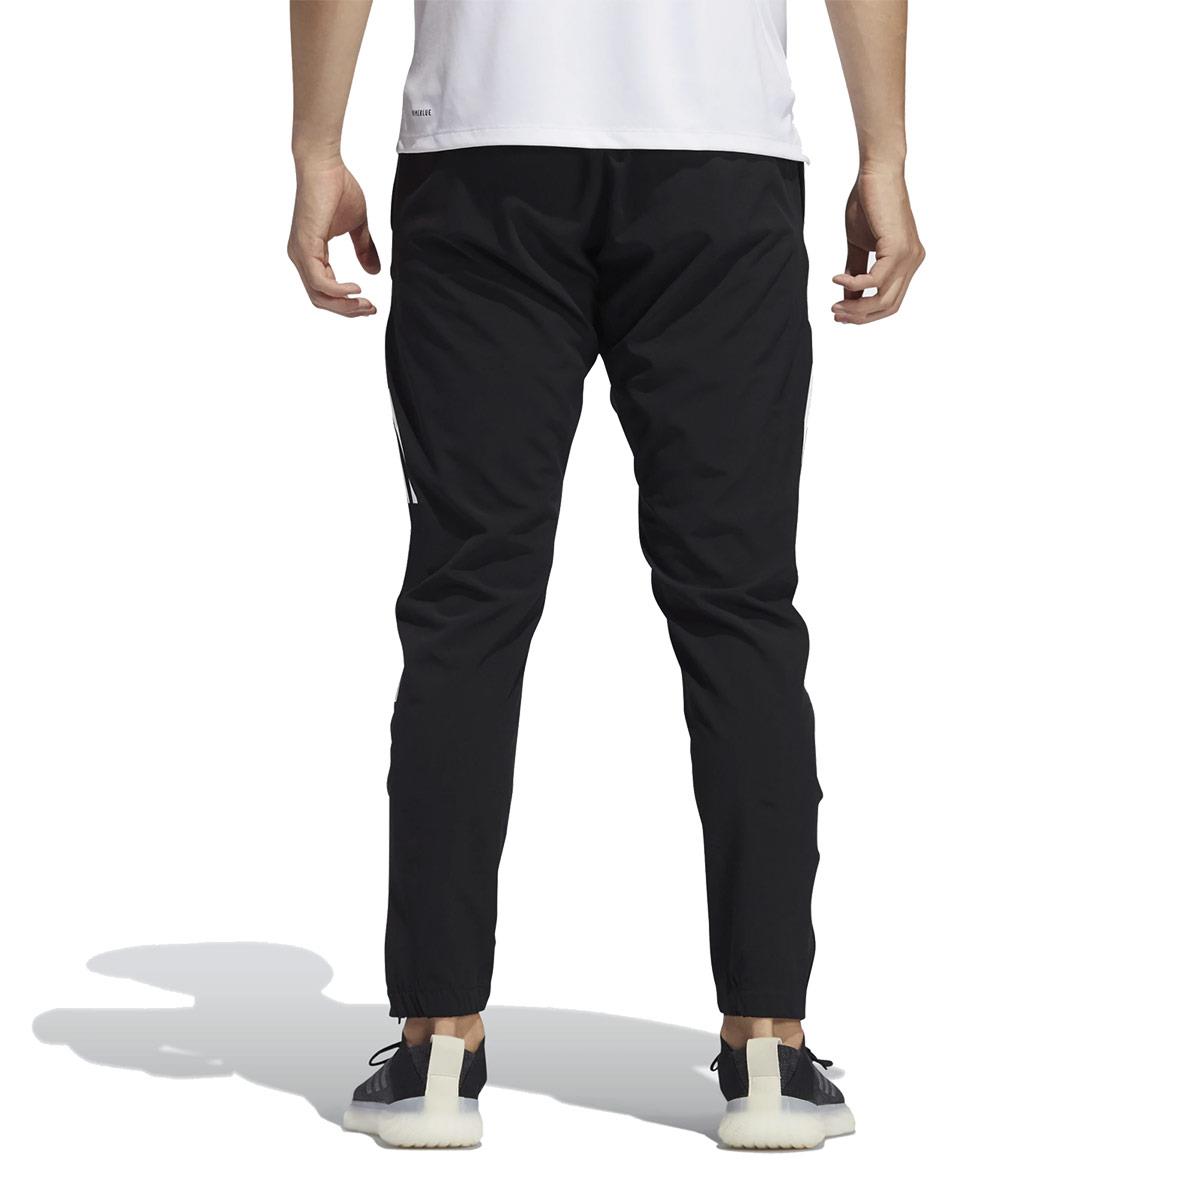 Adidas - Pantalon de jogging coupe-vent à 3 bandes pour homme - Noir